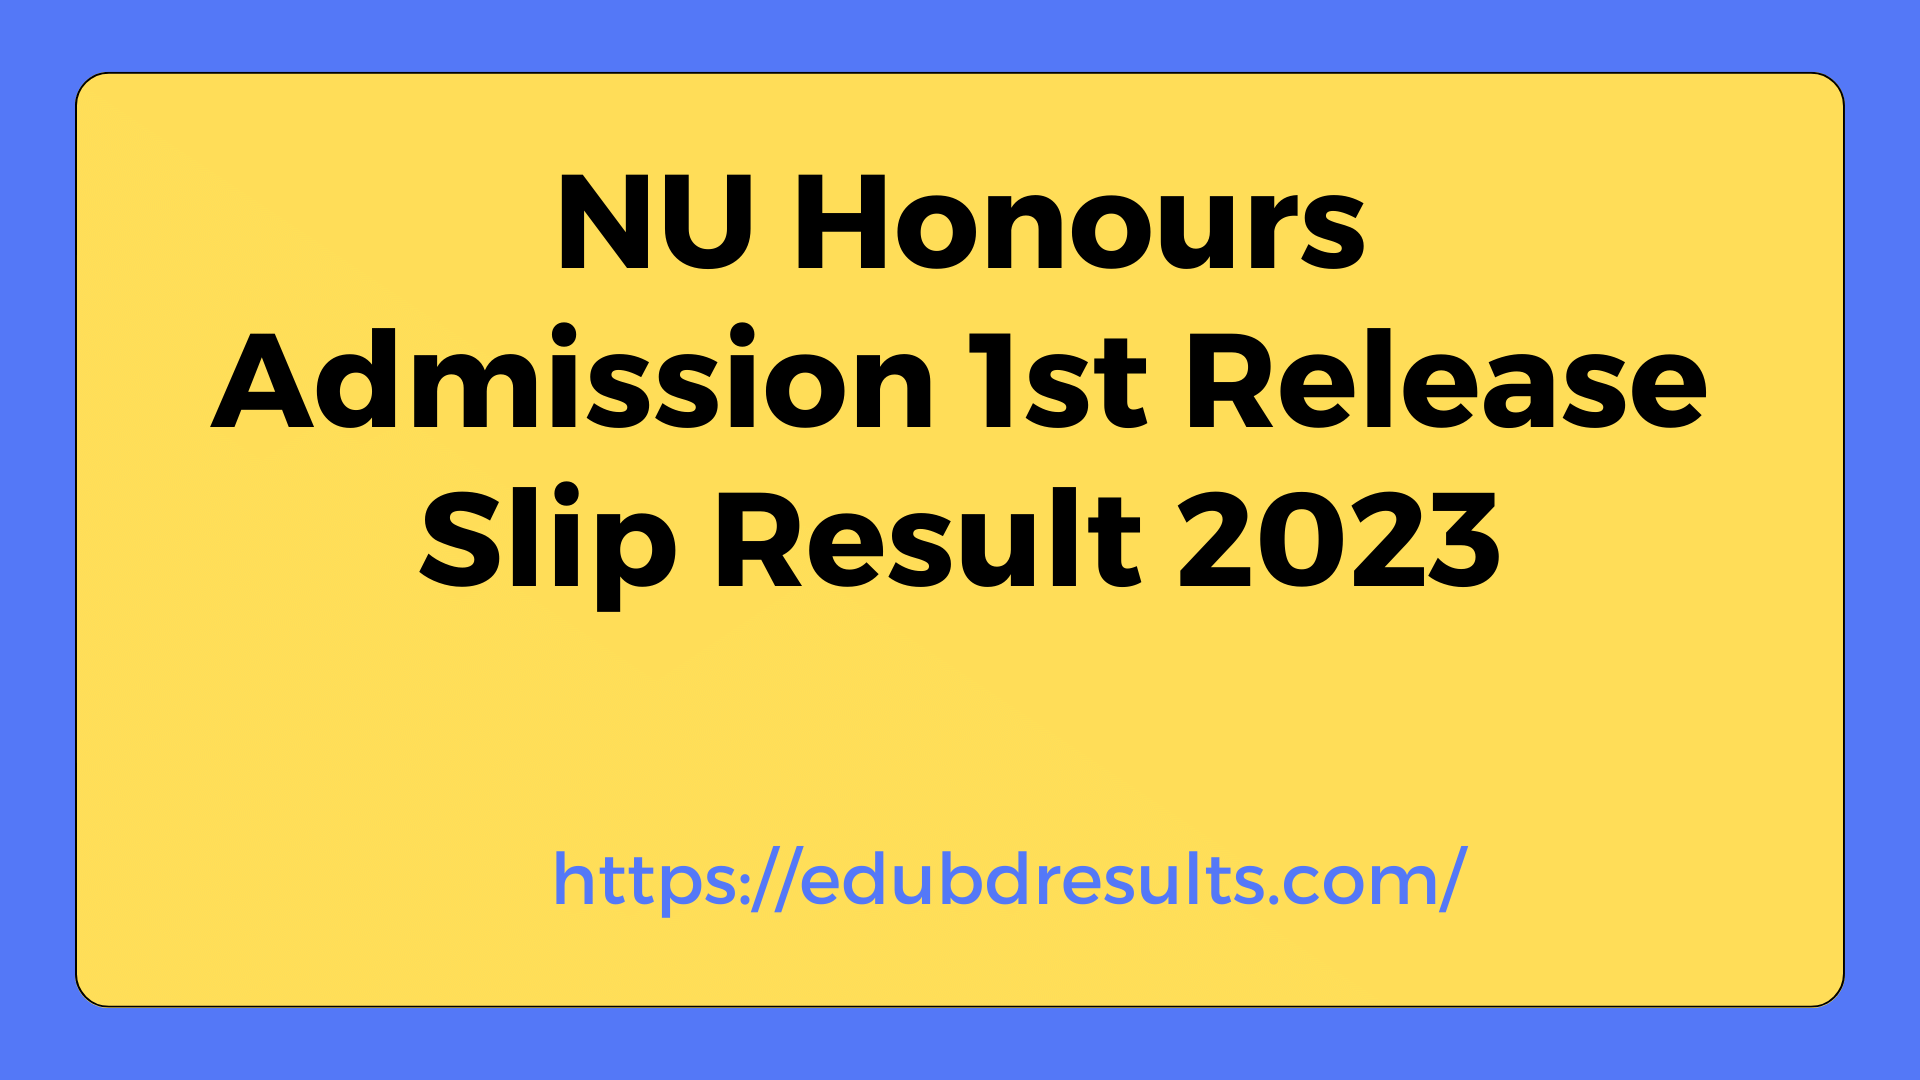 NU Honours Admission 1st Release Slip Result 2023